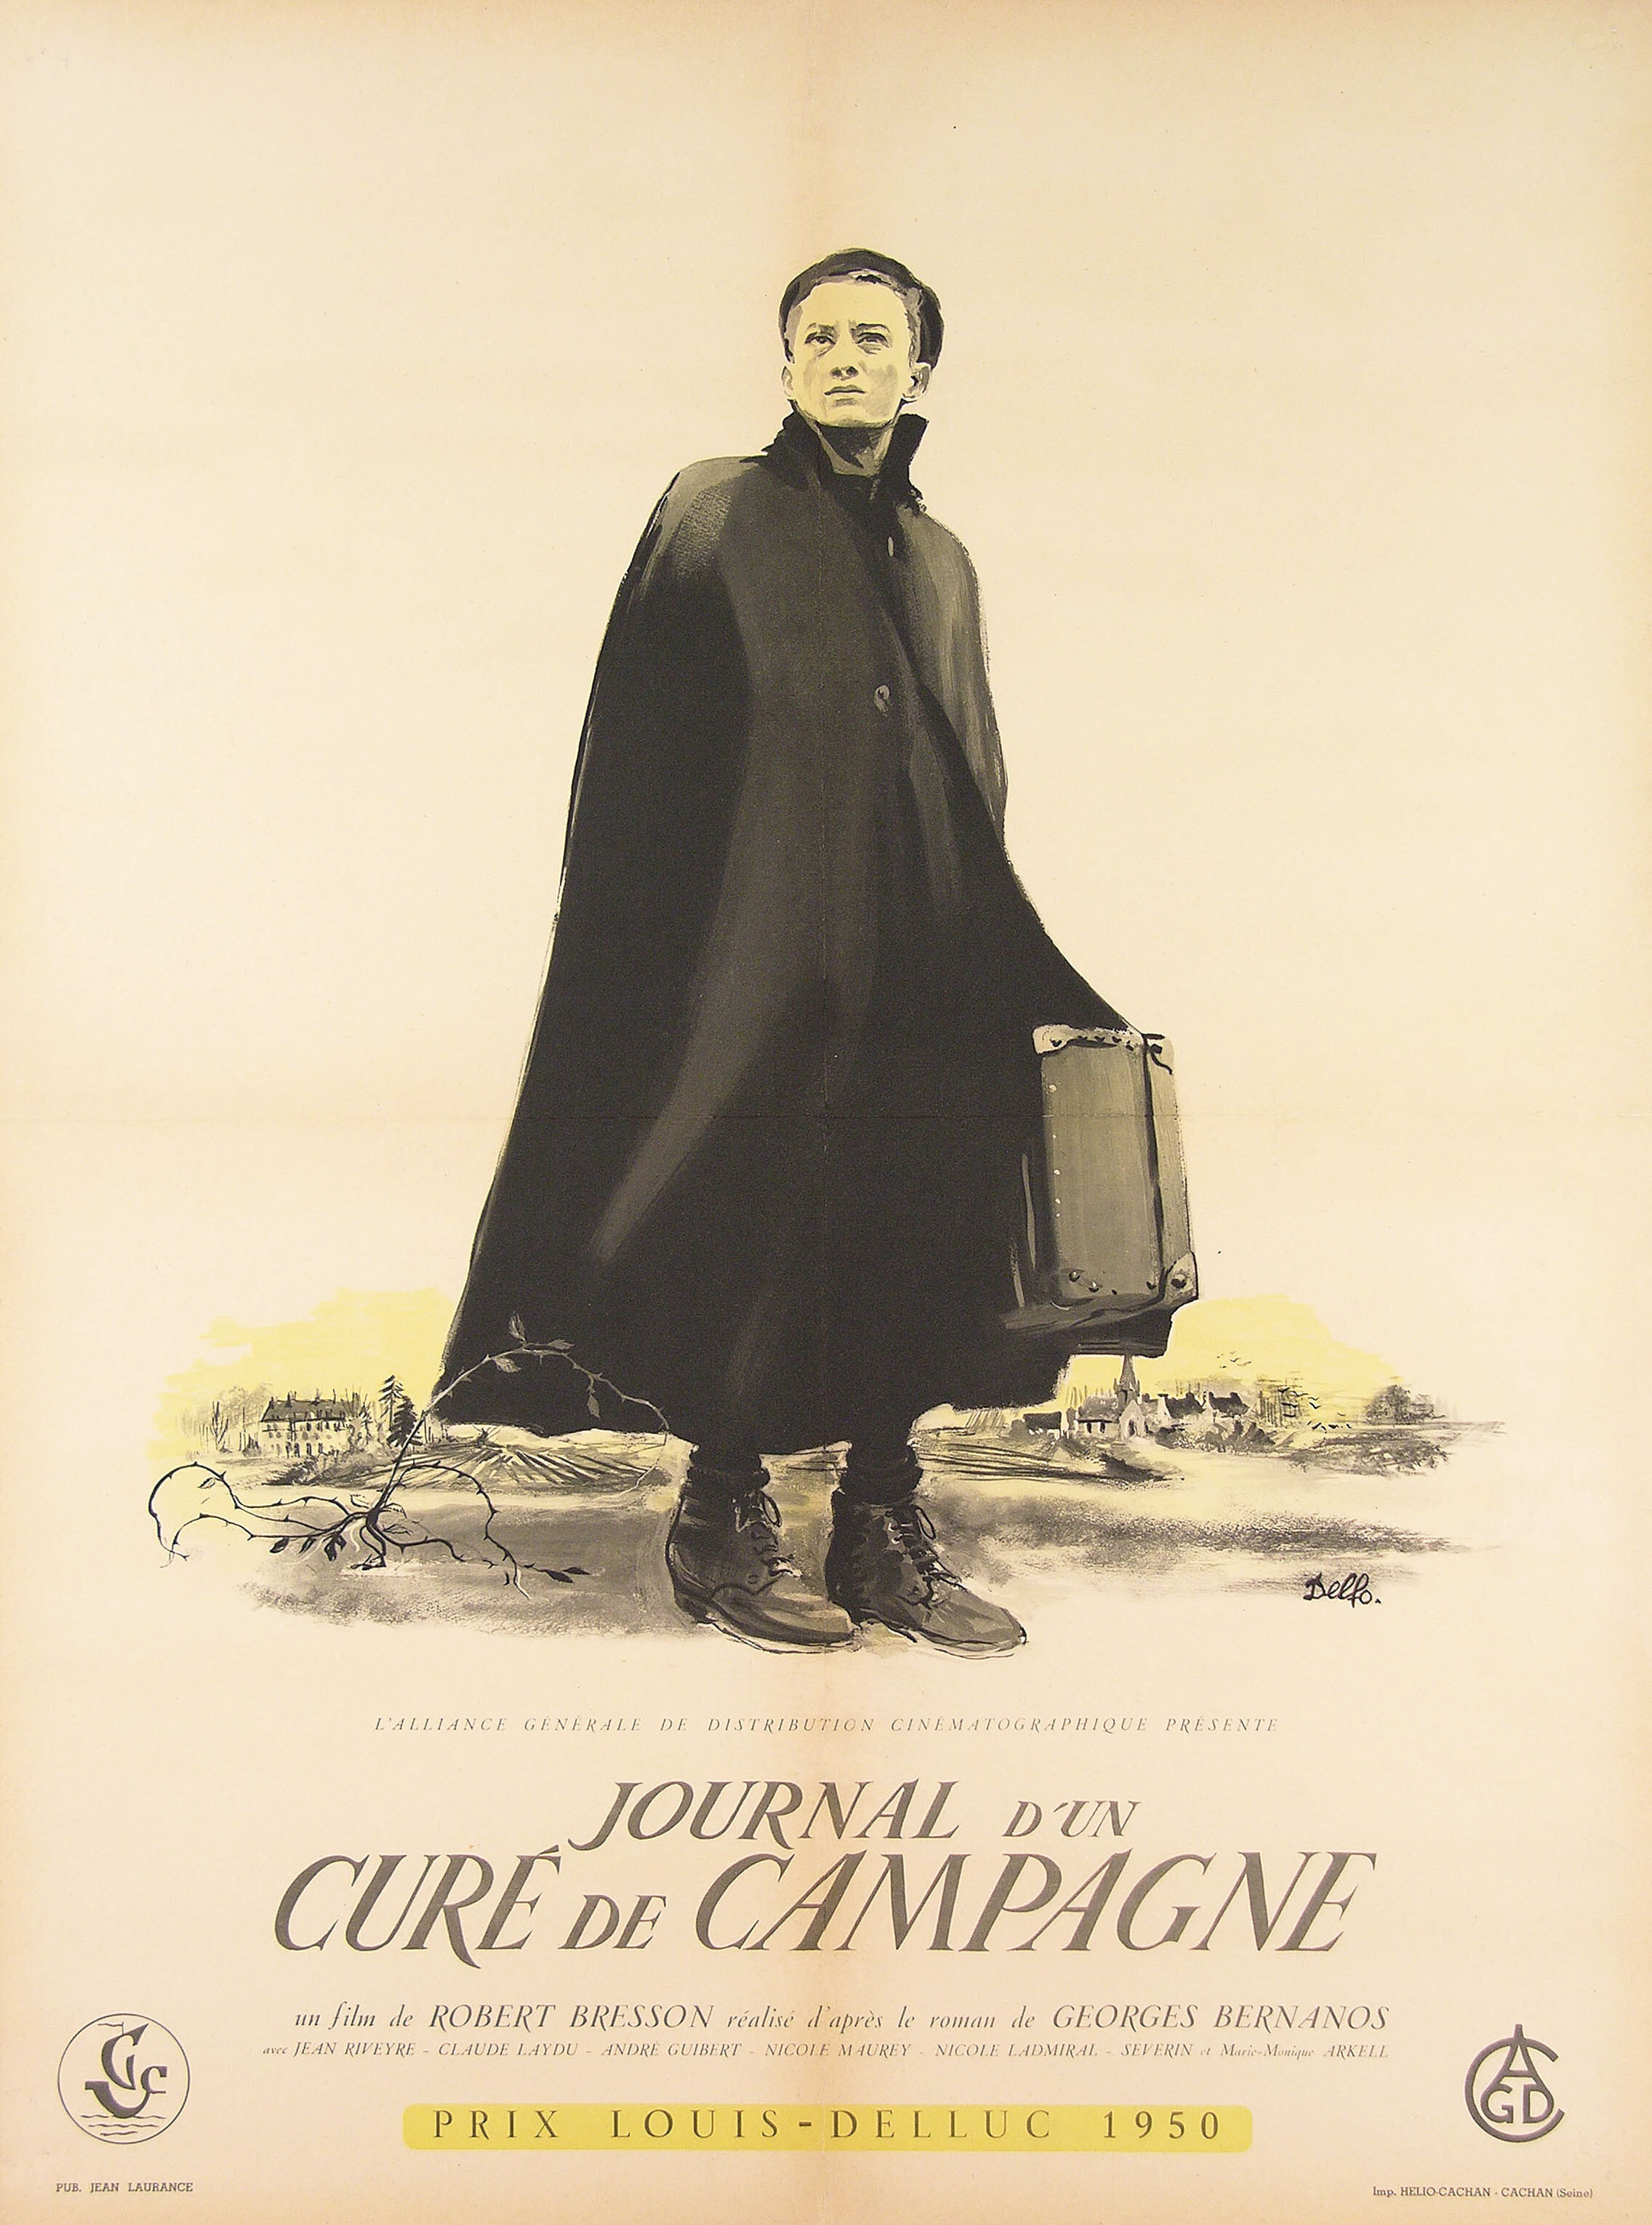 Дневник сельского священника (Diary of a Country Priest, 1951), режиссёр Робер Брессон, художественный постер к фильму (Франция, 1954 год)